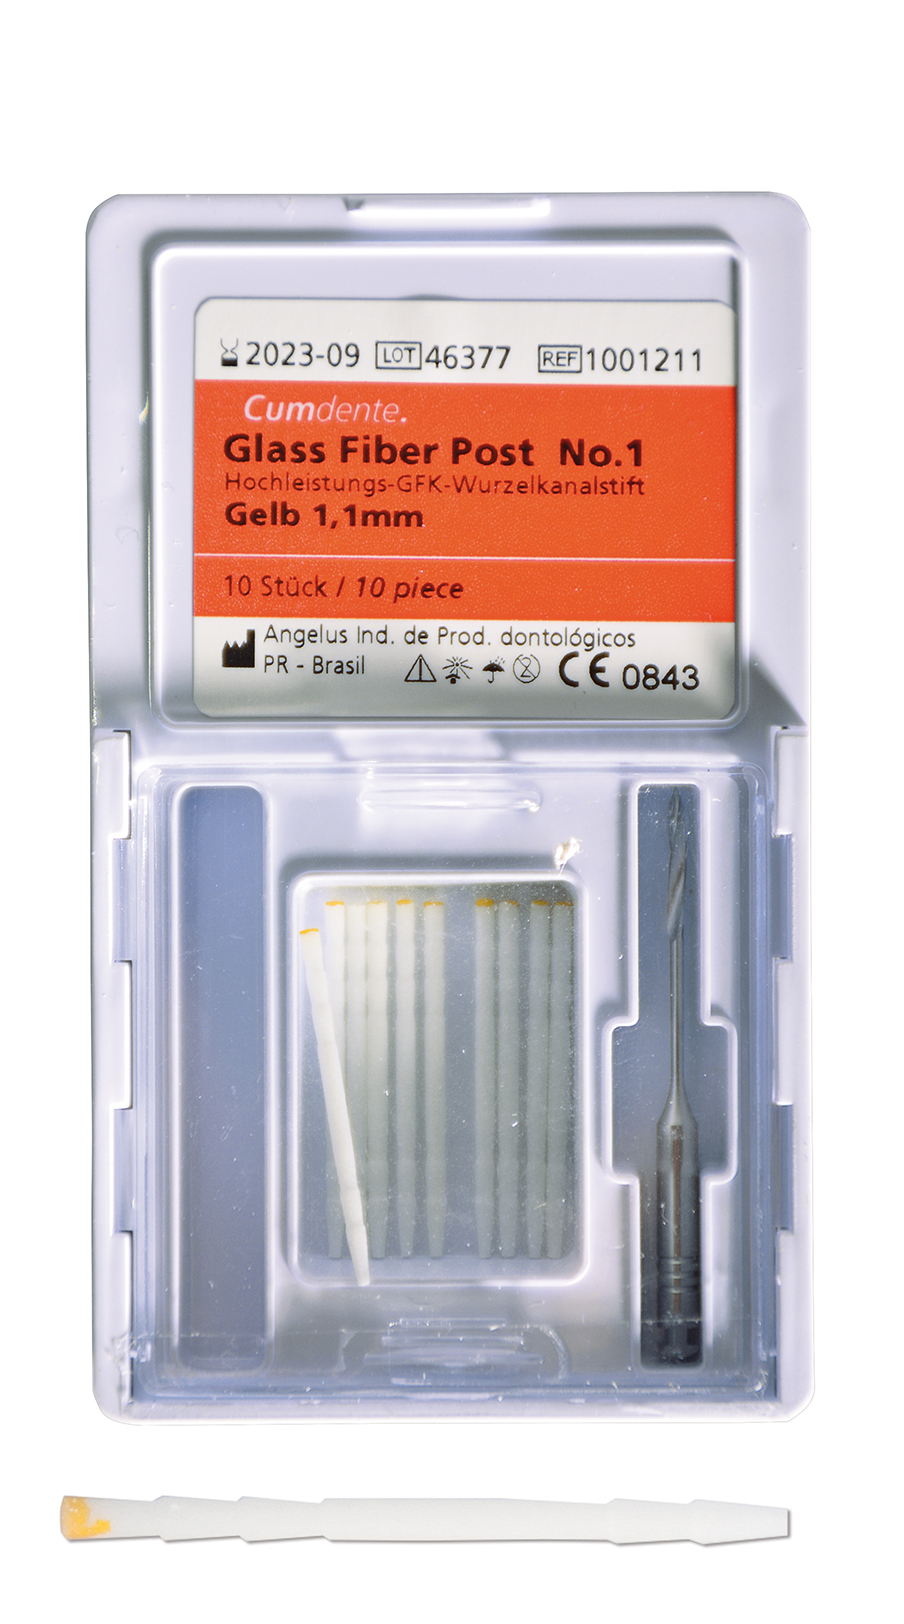 Glass fibre post